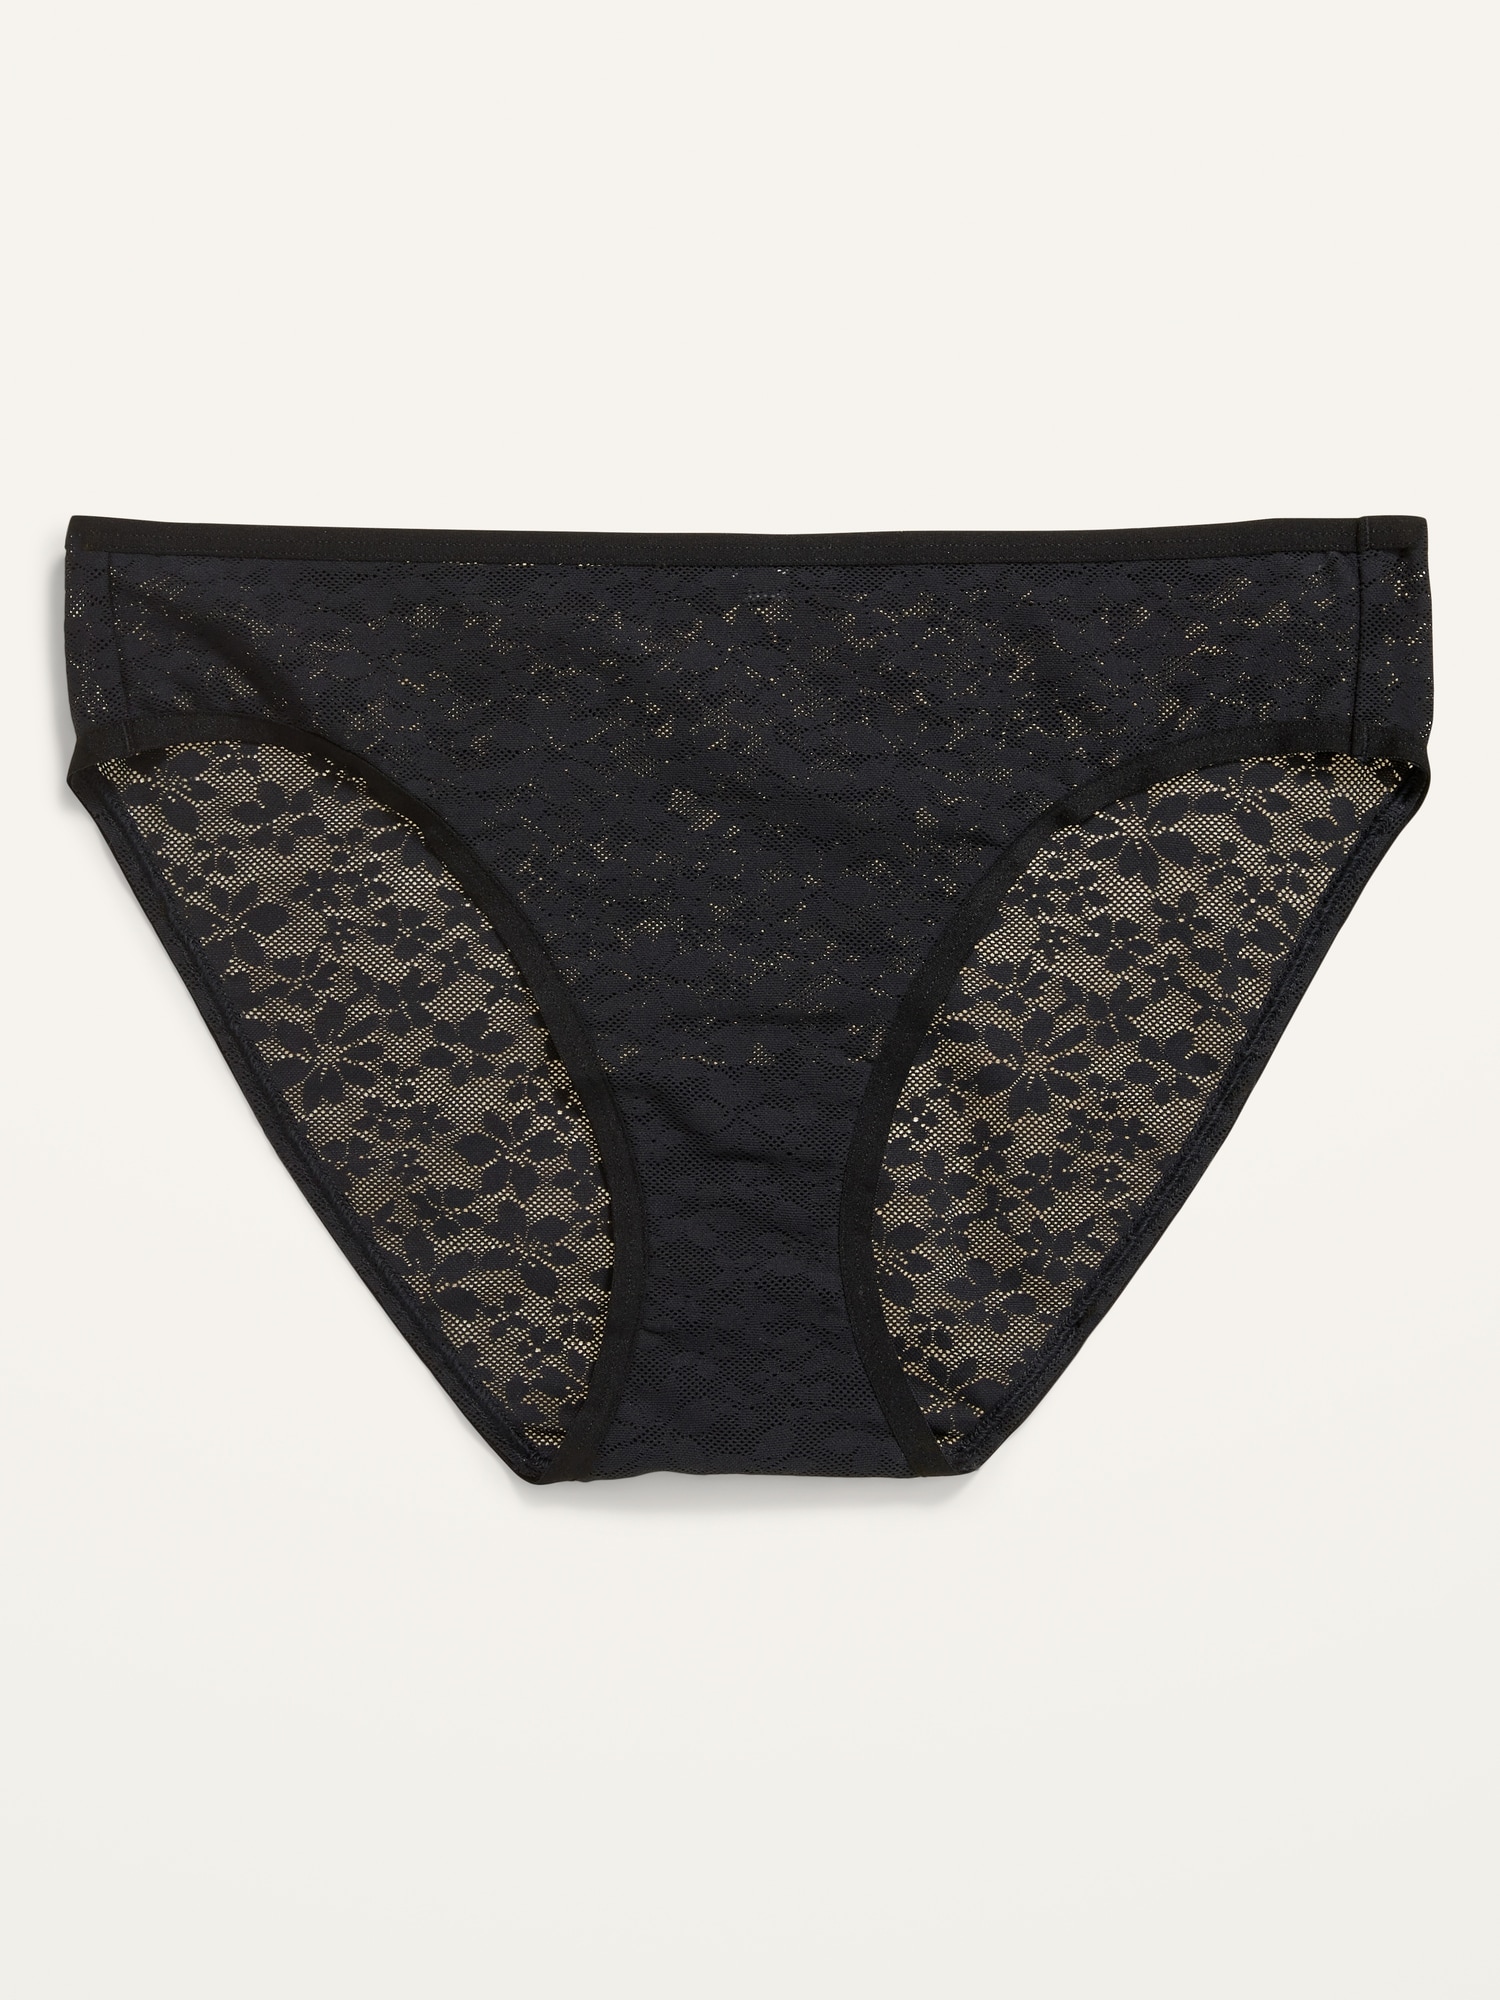 NorthStain - Used panties - Used underwear from Scandinavia